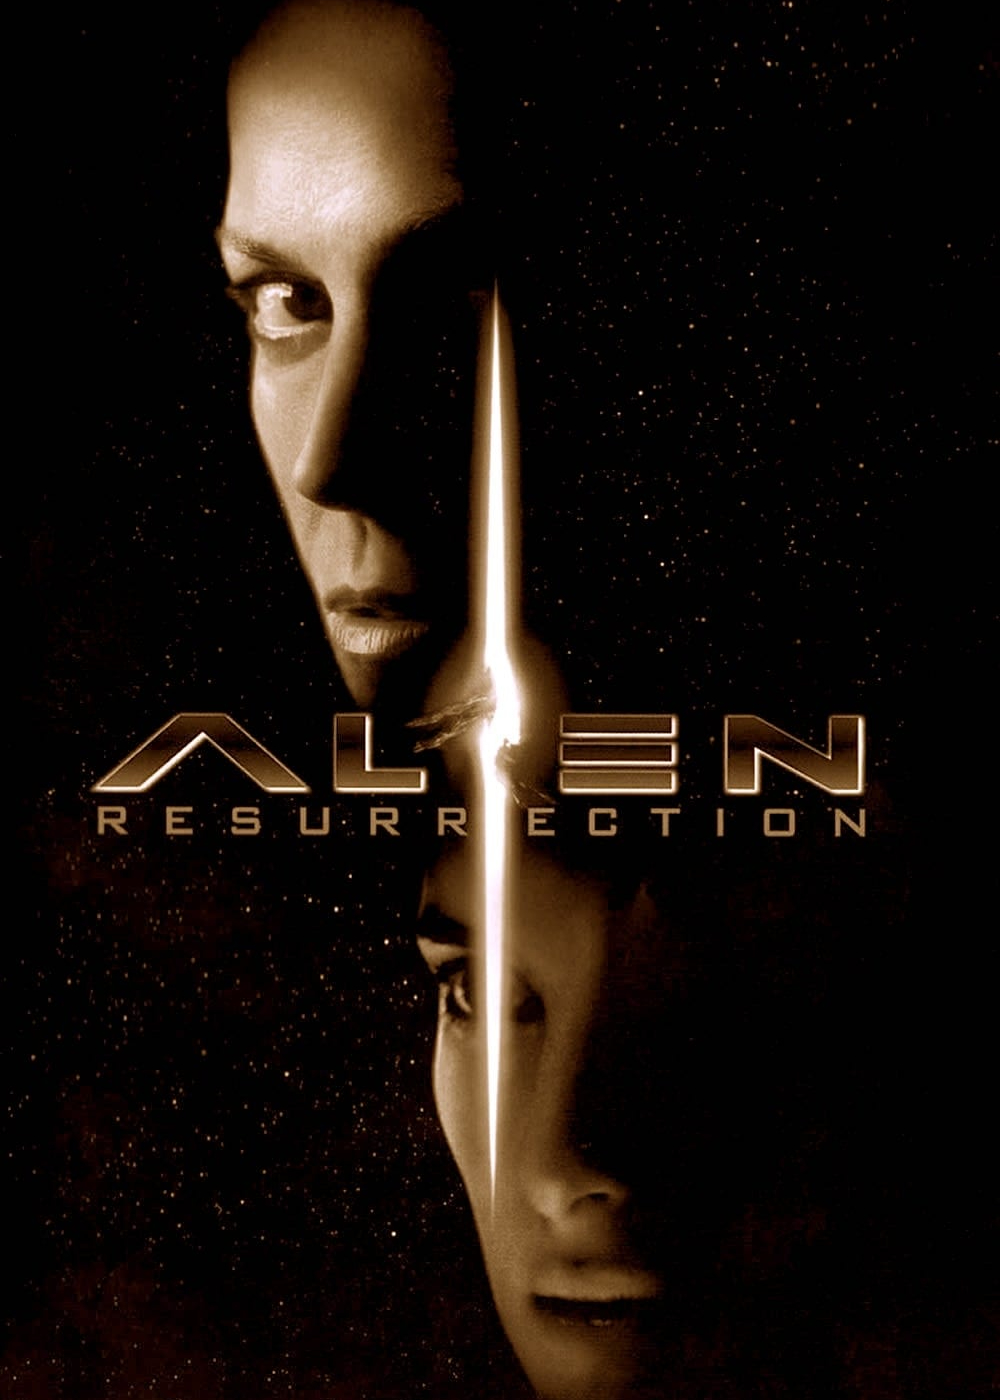 Poster Phim Alien: Resurrection (Alien: Resurrection)